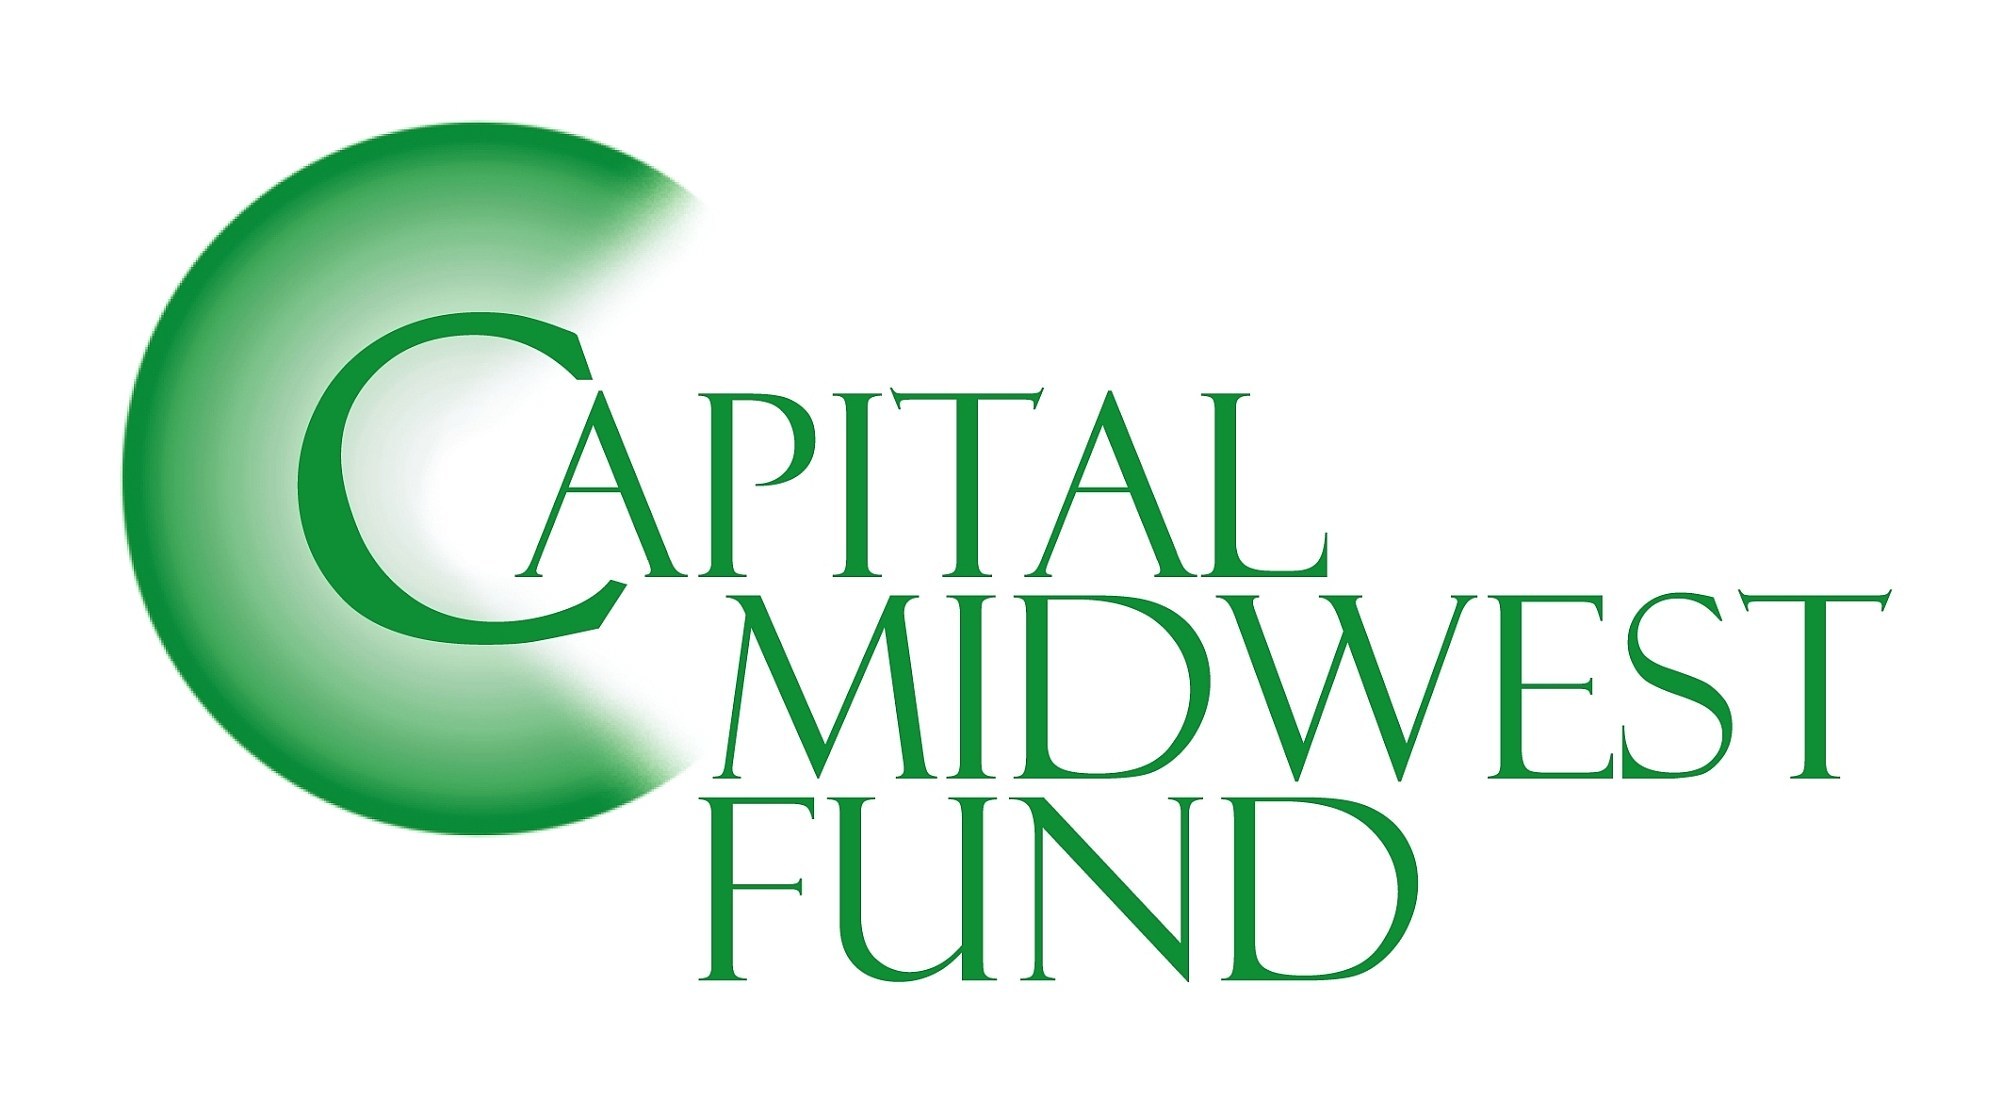 (PRNewsfoto/Capital Midwest Fund)